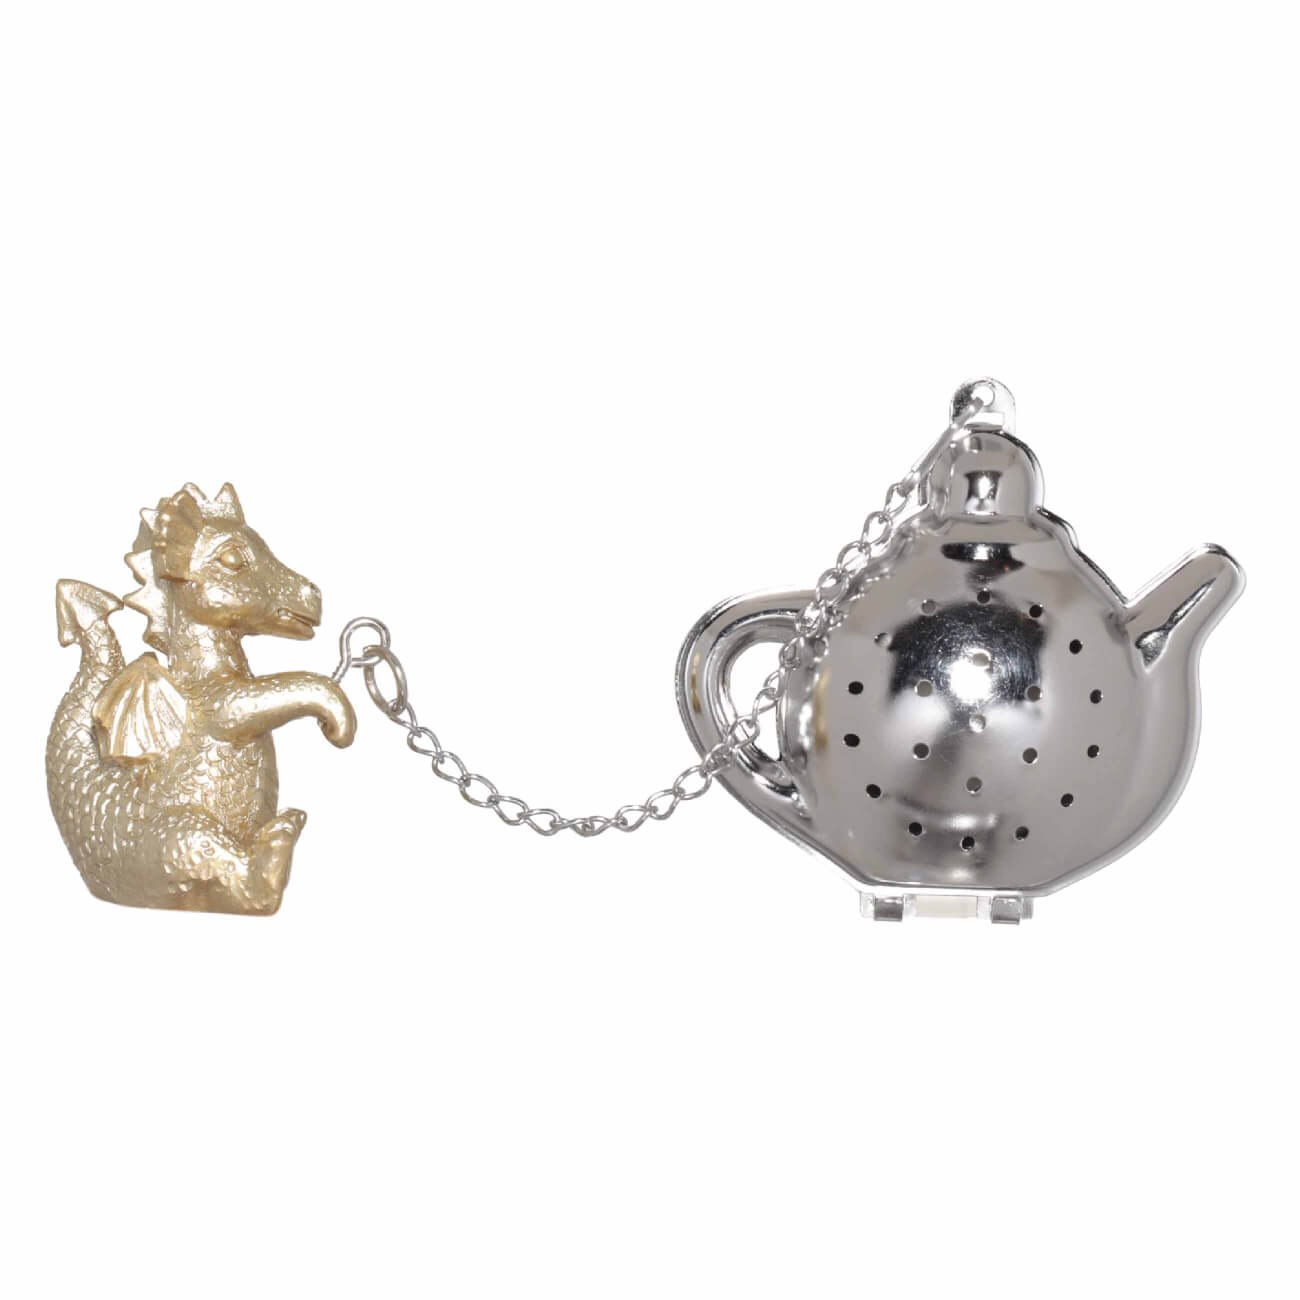 Сито для заваривания чая, 18 см, сталь/полирезин, золотисто-серебристое, Дракон, Dragon cute изображение № 1